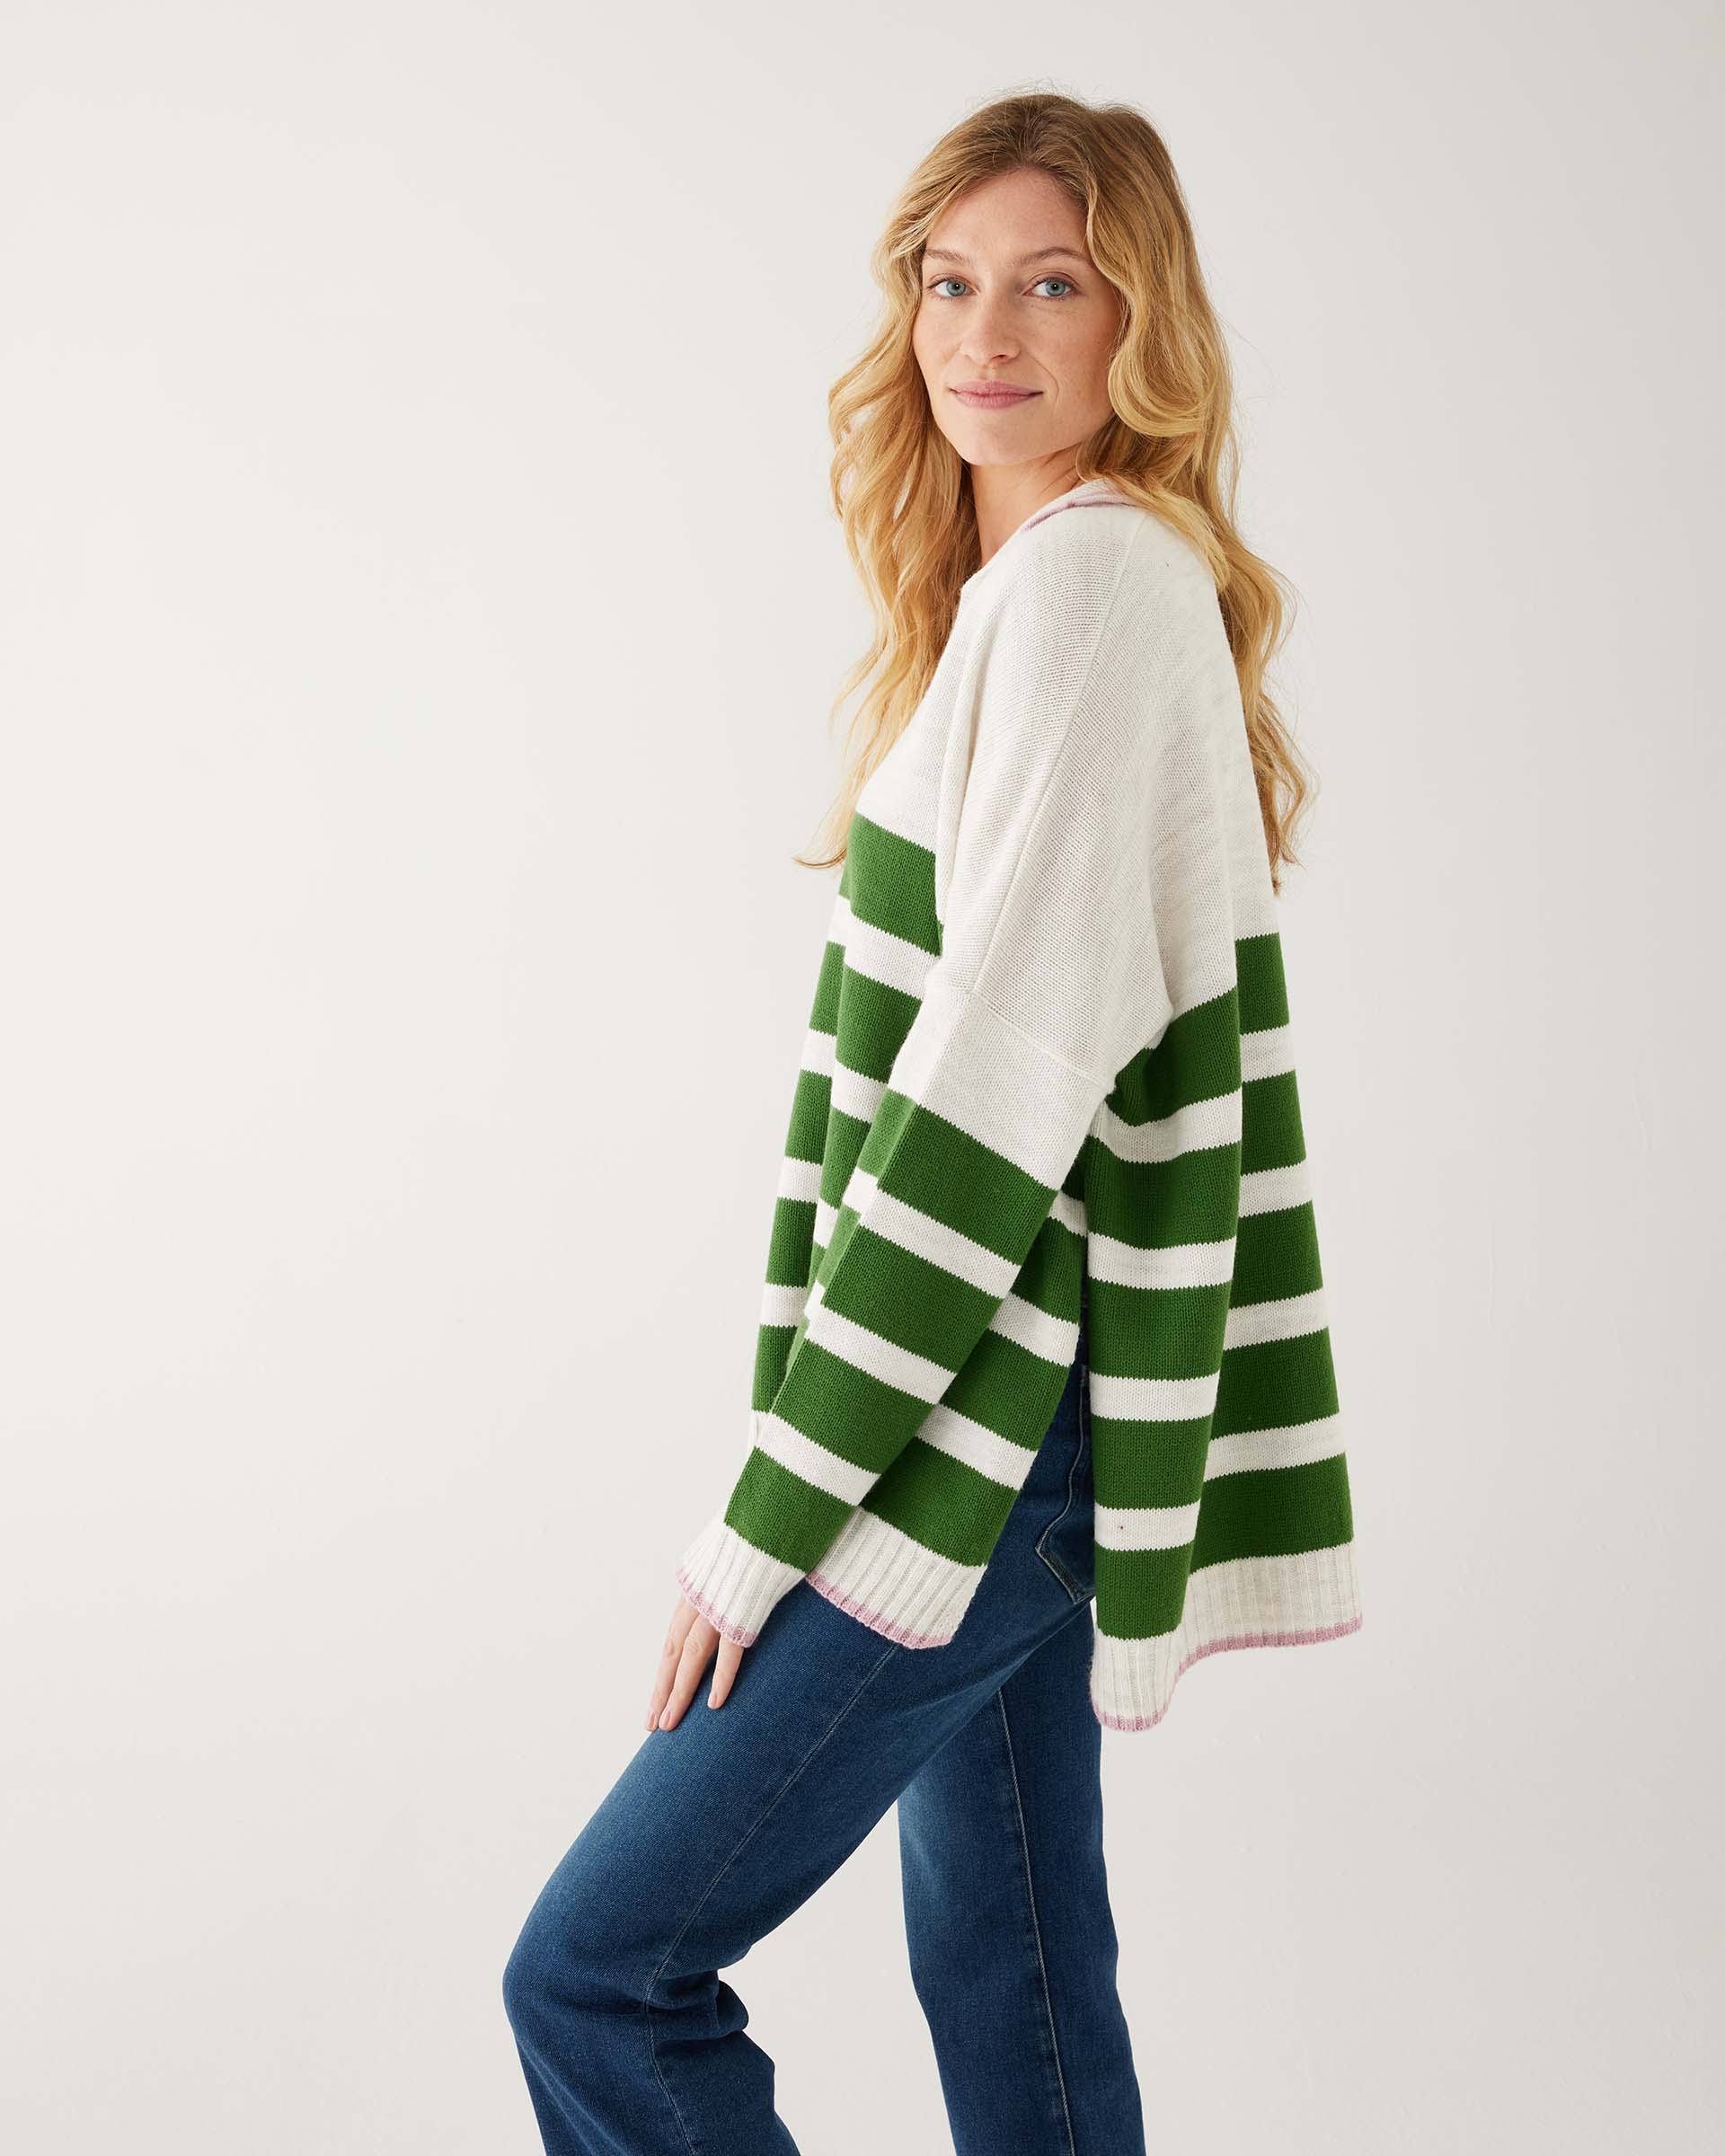 profile of woman showcasing mersea marina polo sweater in green and sea salt stripe